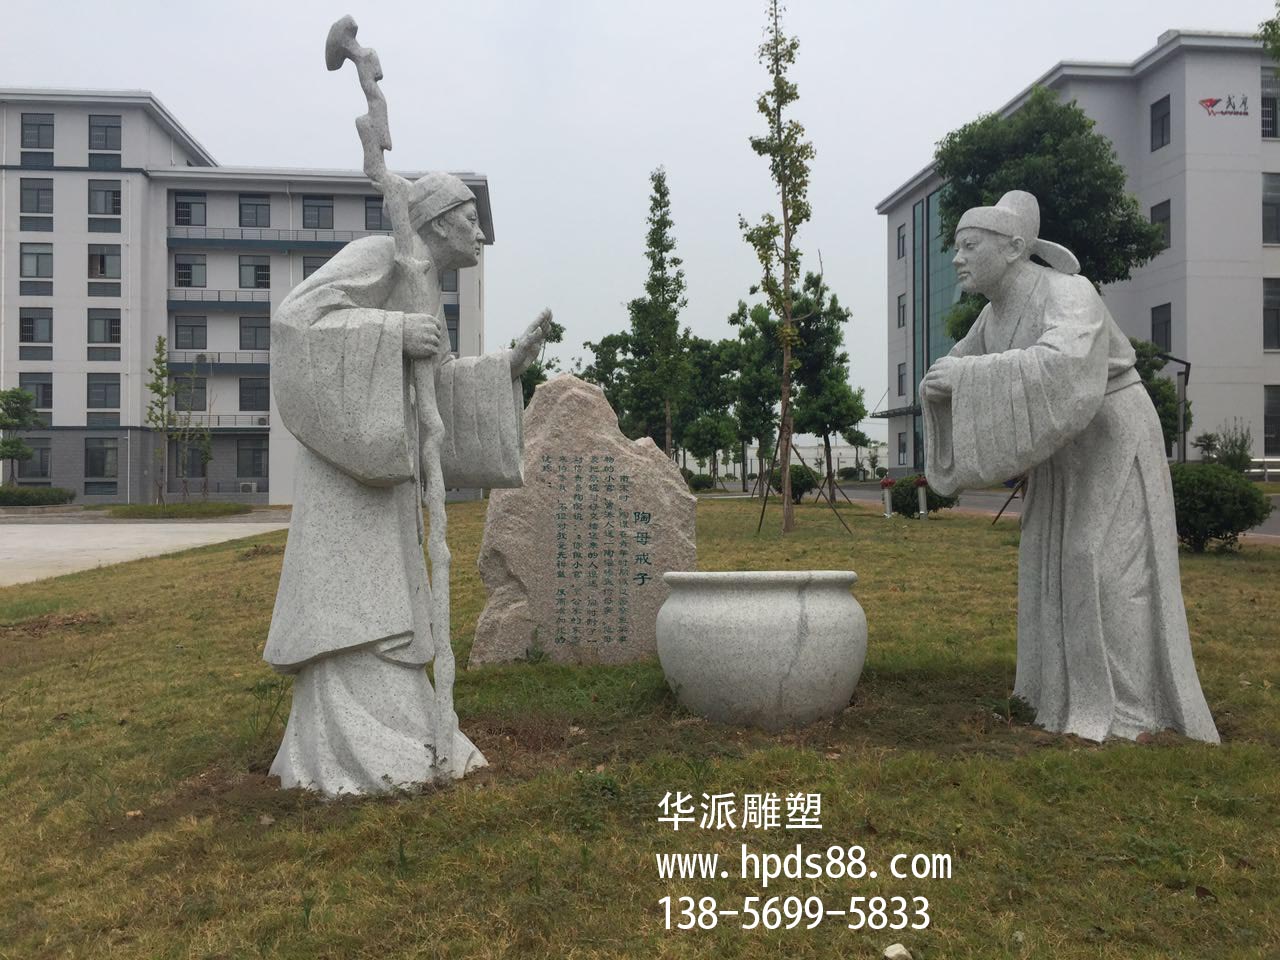 安徽华派雕塑制作石雕